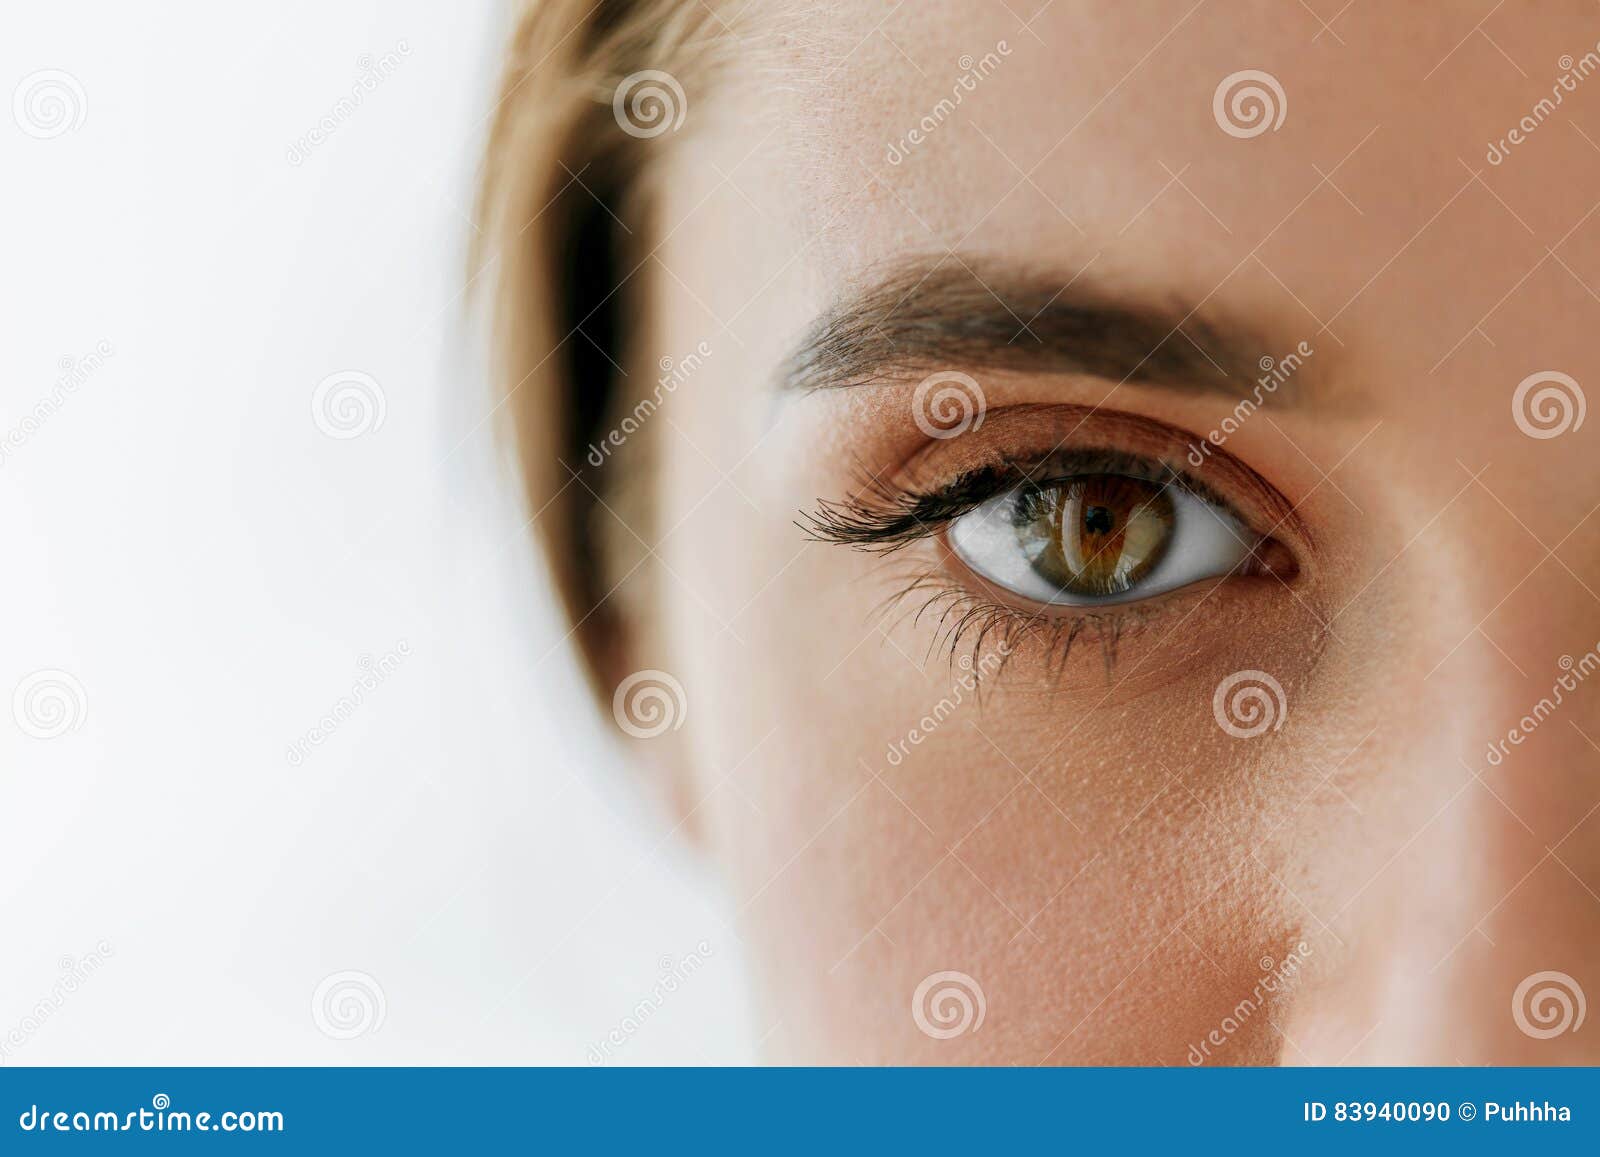 closeup of beautiful girl eye and eyebrow with natural makeup